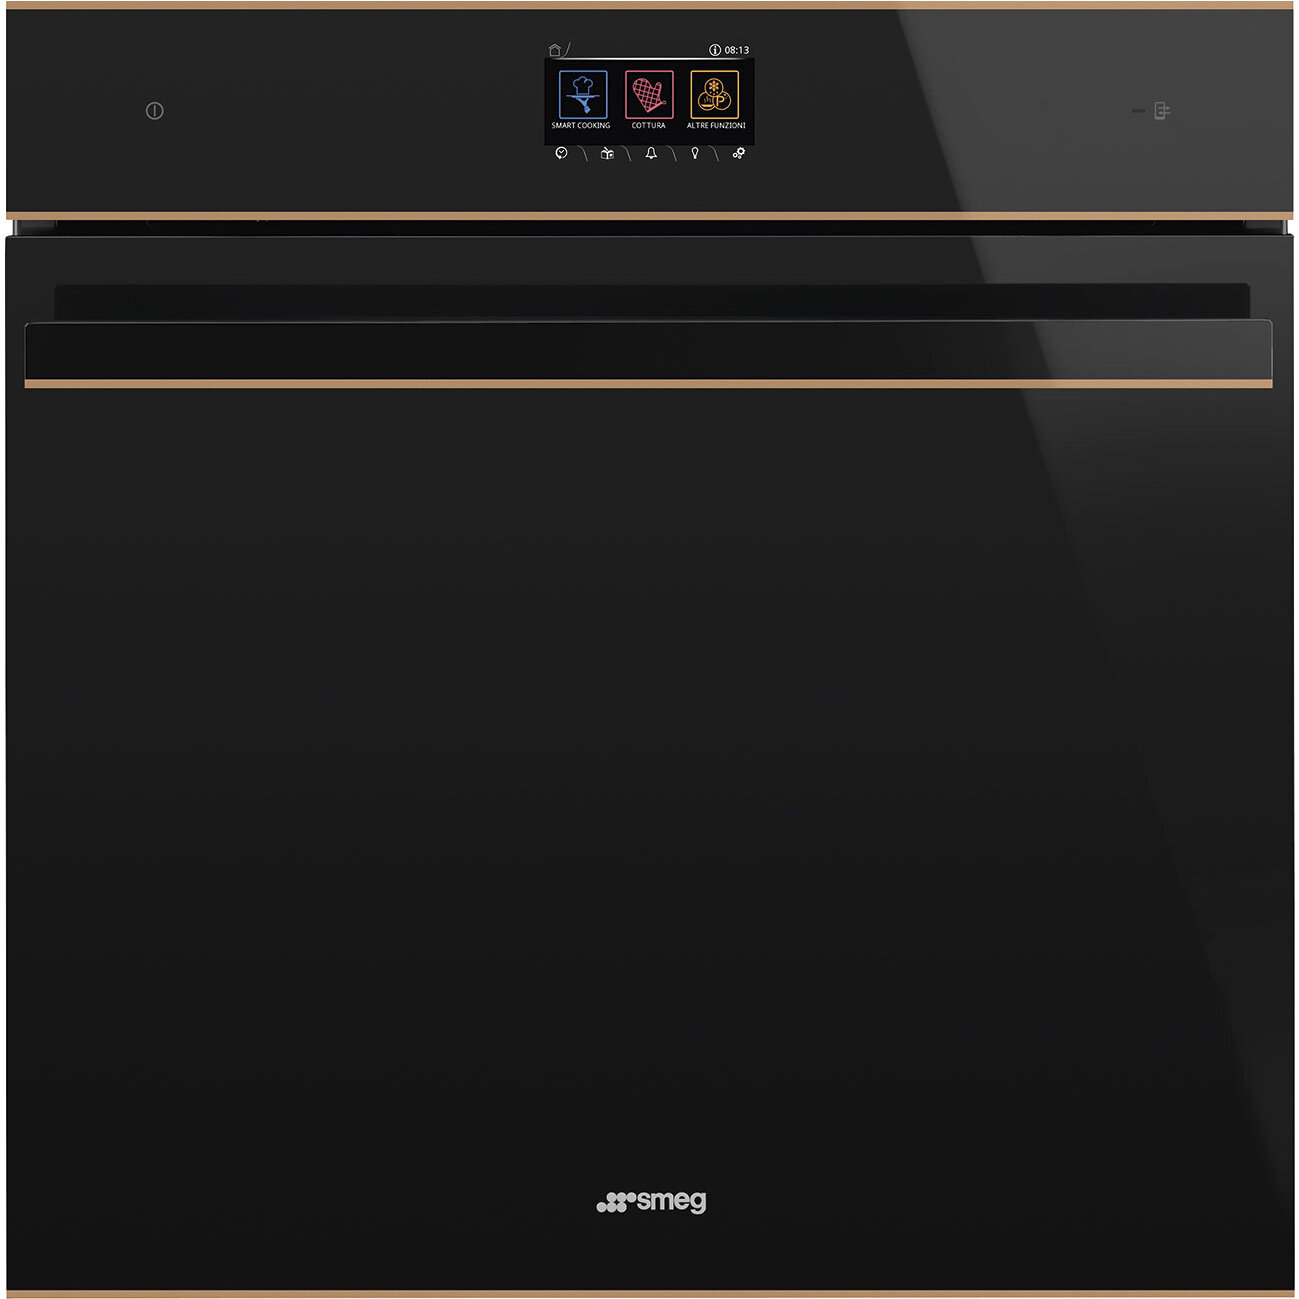 Smeg Встраиваемый духовой шкаф/ Многофункциональный шкаф с пиролизом, 60 см, 10 функций, черное стекло Eclipse, медный профиль